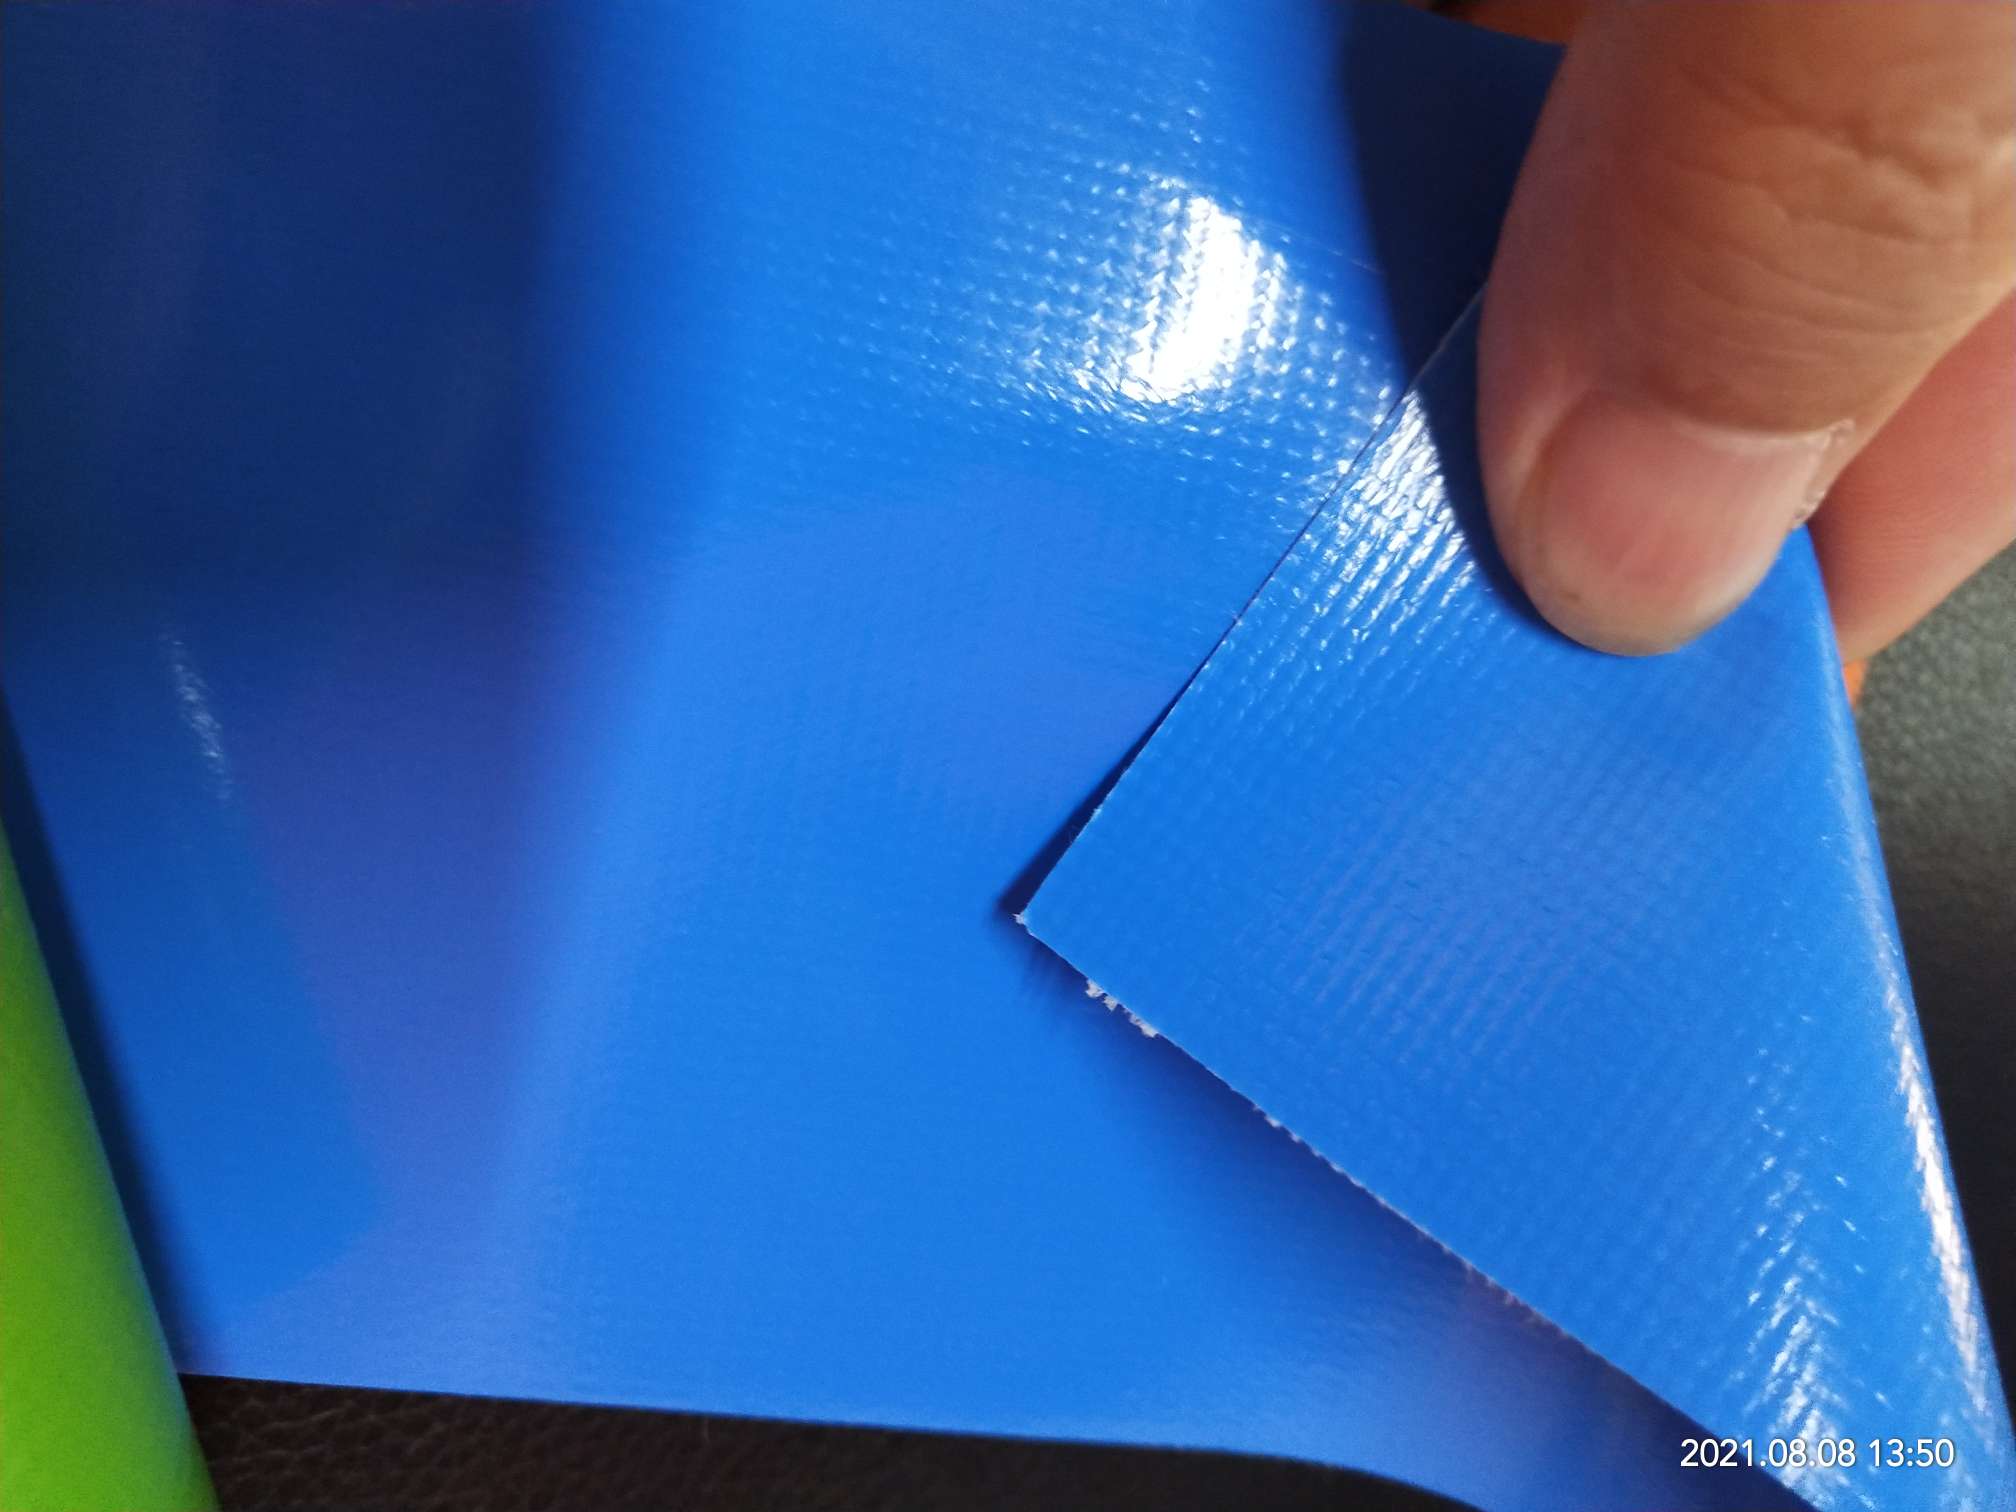 优质光面0.47mm厚浅蓝色PVC夹网布  箱包布  机器罩家具罩  体育游乐产品  格种箱包袋专用面料详情图3